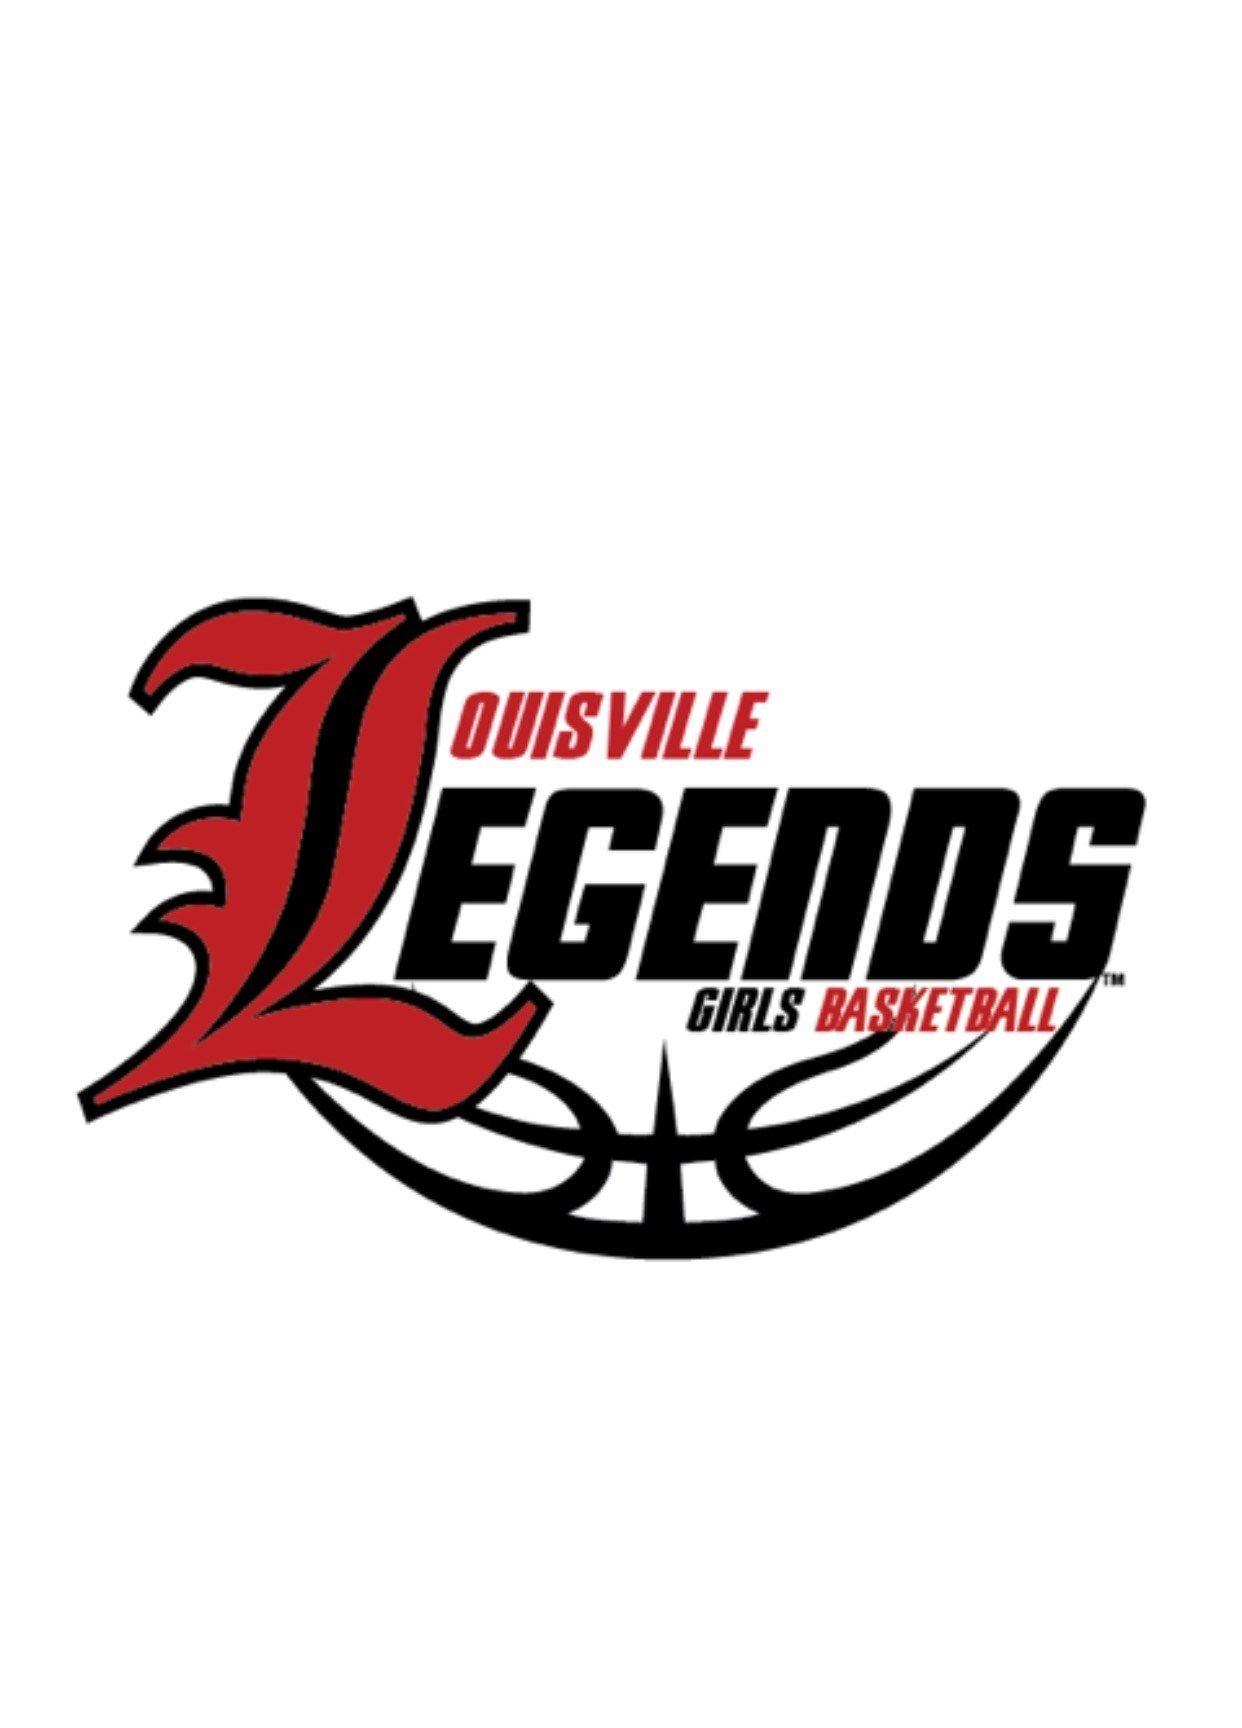 AAU Logo - Louisville Legends AAU Logo. KySportsTV - Local Sports Network